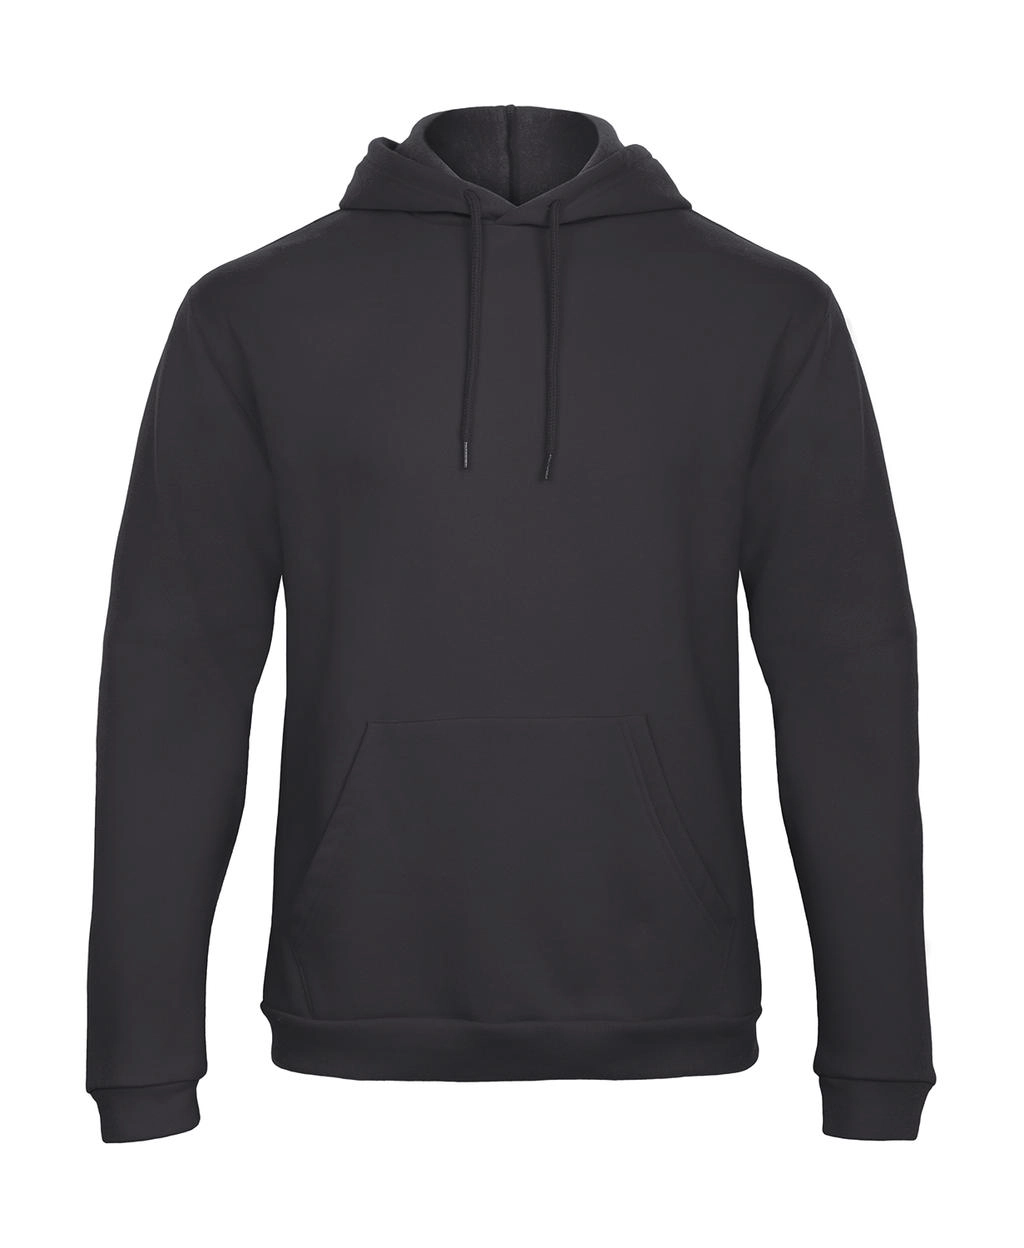 ID.203 50/50 Hooded Sweatshirt Unisex  zum Besticken und Bedrucken in der Farbe Anthracite mit Ihren Logo, Schriftzug oder Motiv.